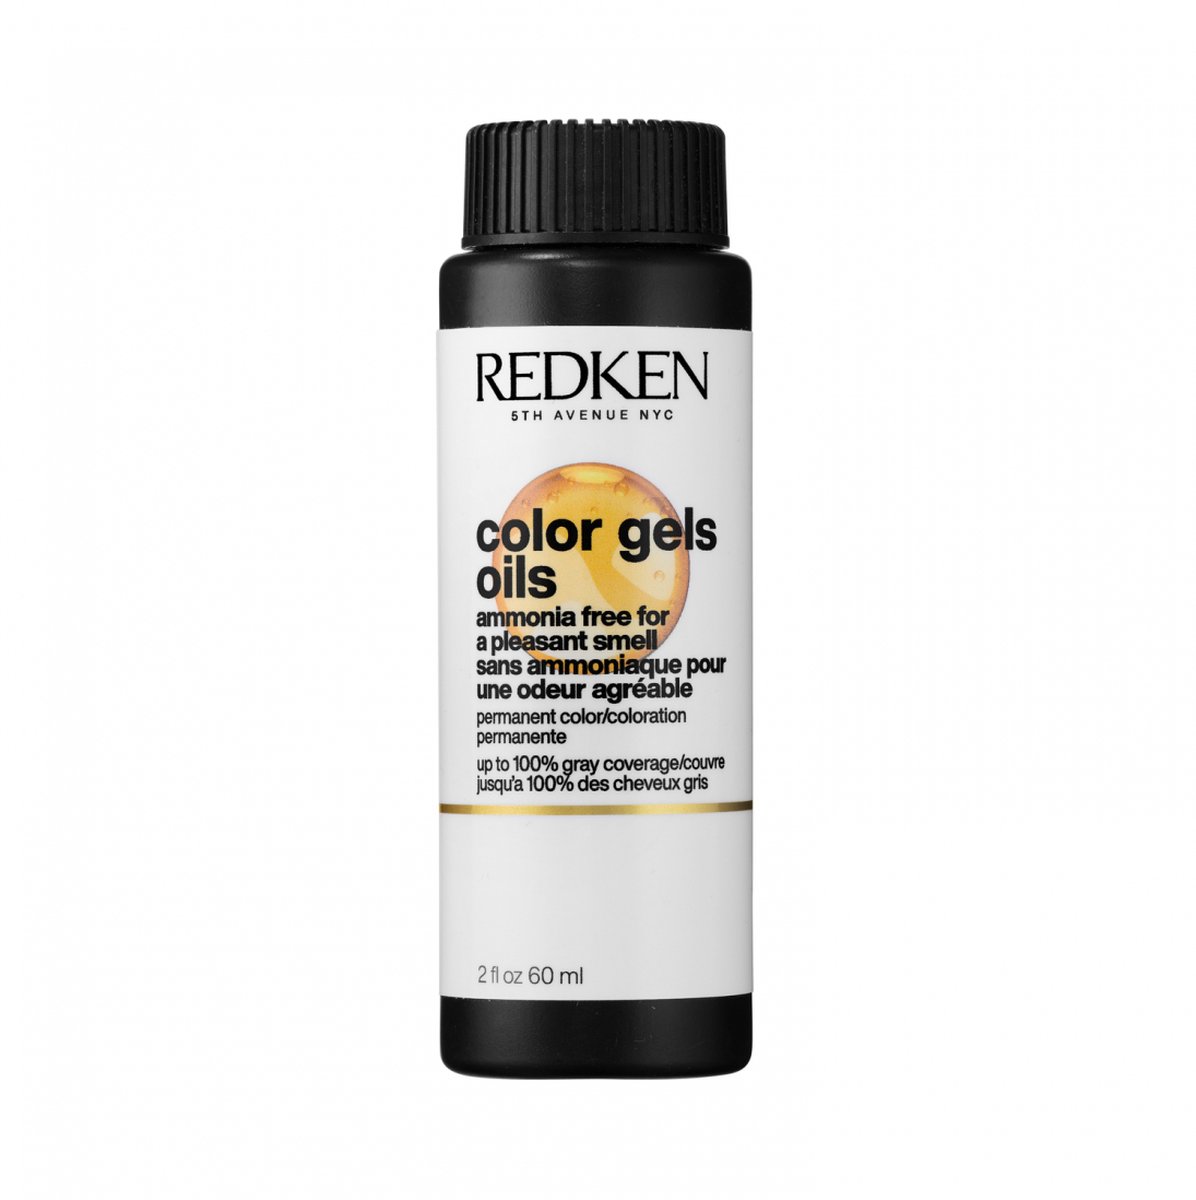 Redken Color Gels Oils 8N 60ml